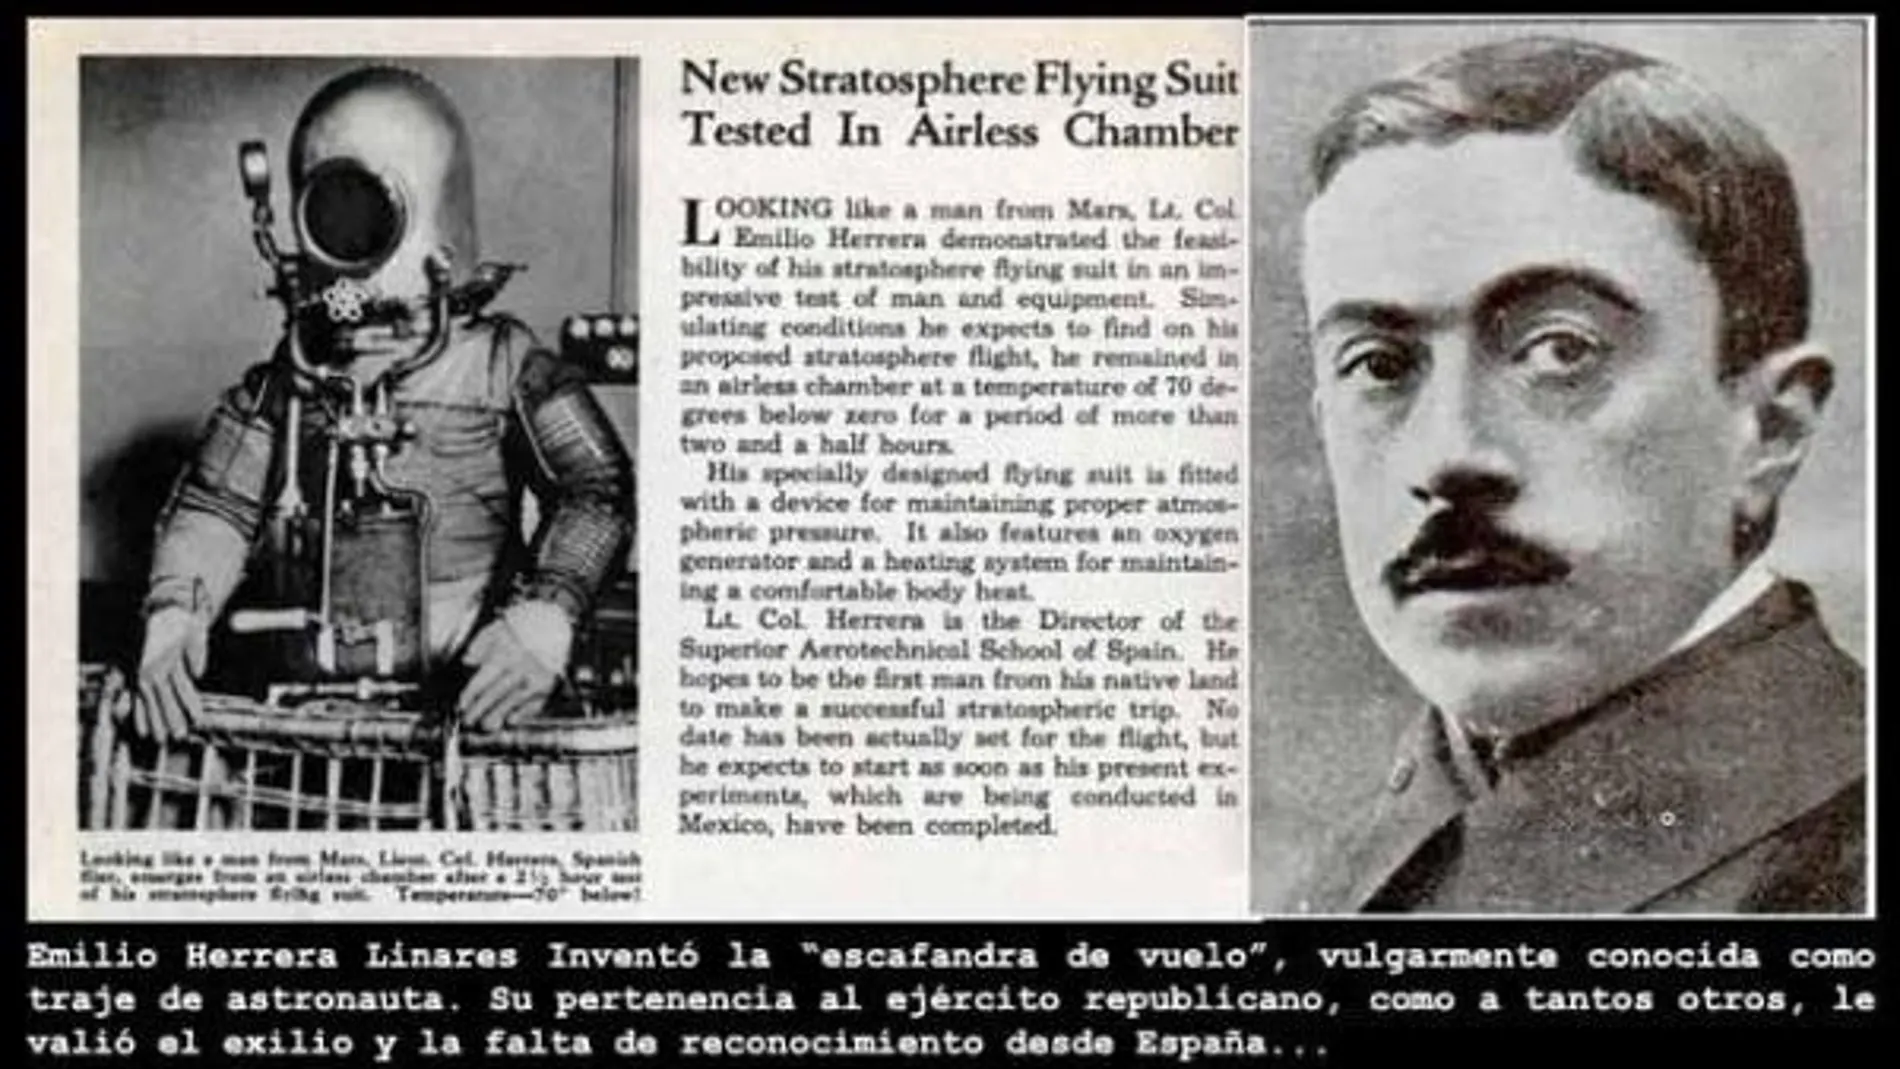 Emilio Herrero diseñó el primer traje de astronauta en 1935, como cuenta este recorte de periódico